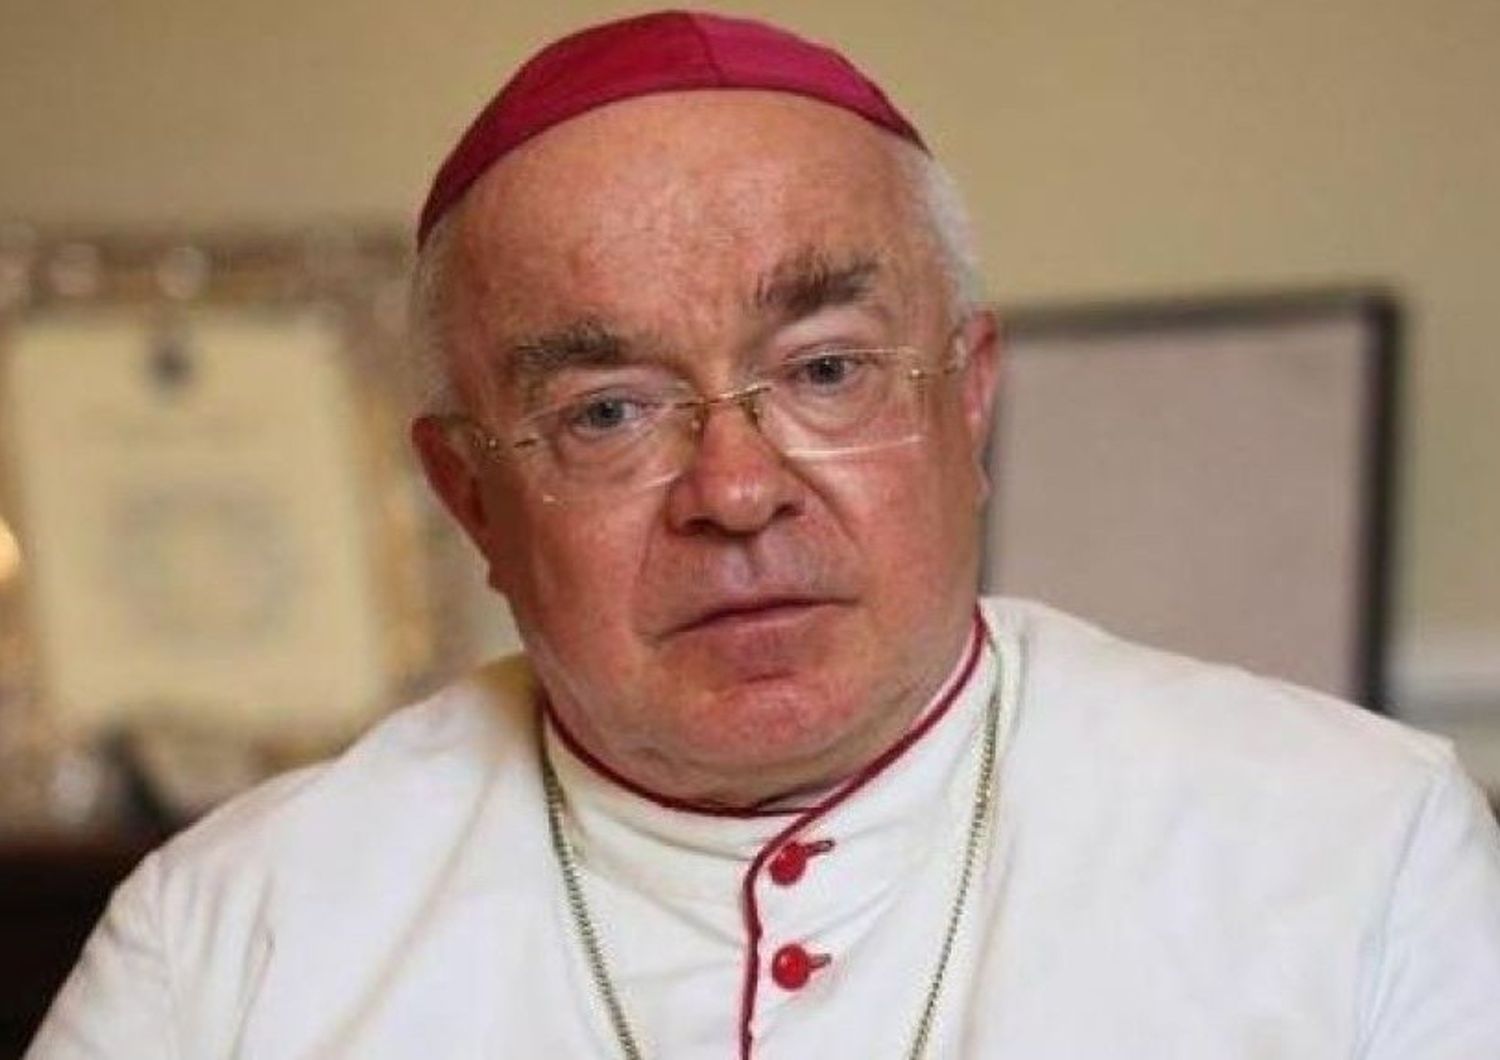 Pedofilia: ex nunzio Wesolowski sara' processato in Vaticano